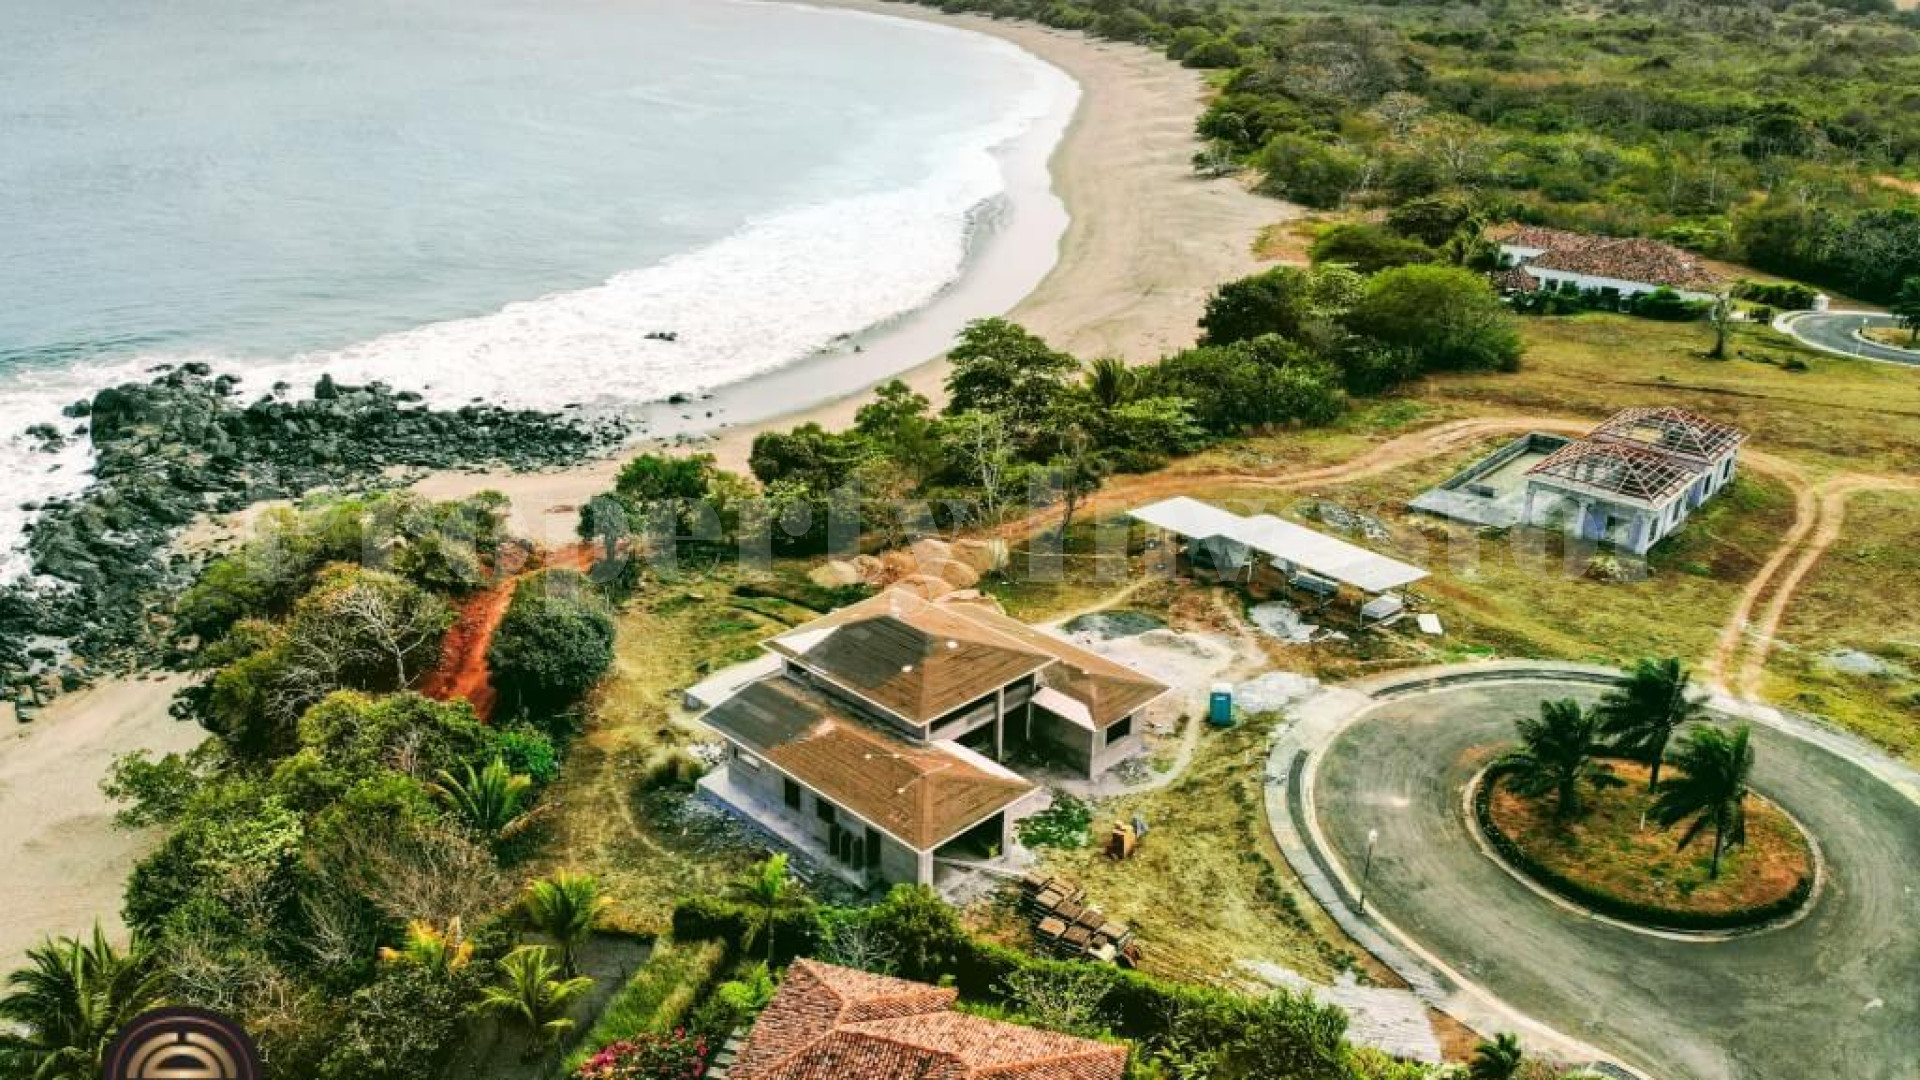 Незавершенное строительство дома на 3 спальни на берегу пляжа в Педасе, Панама